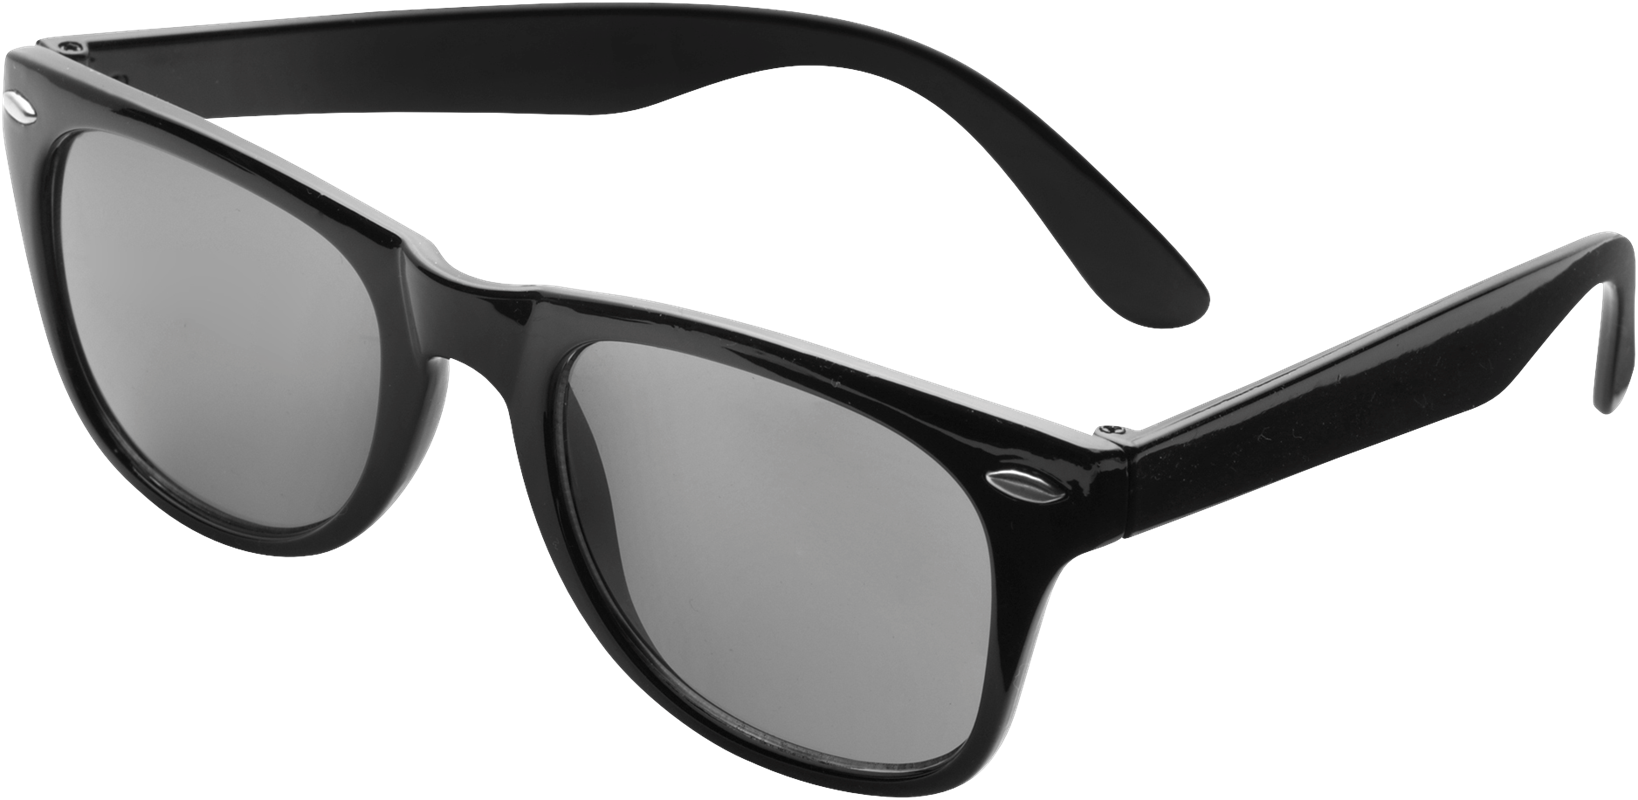 Classic sunglasses 9672_001 (Black)